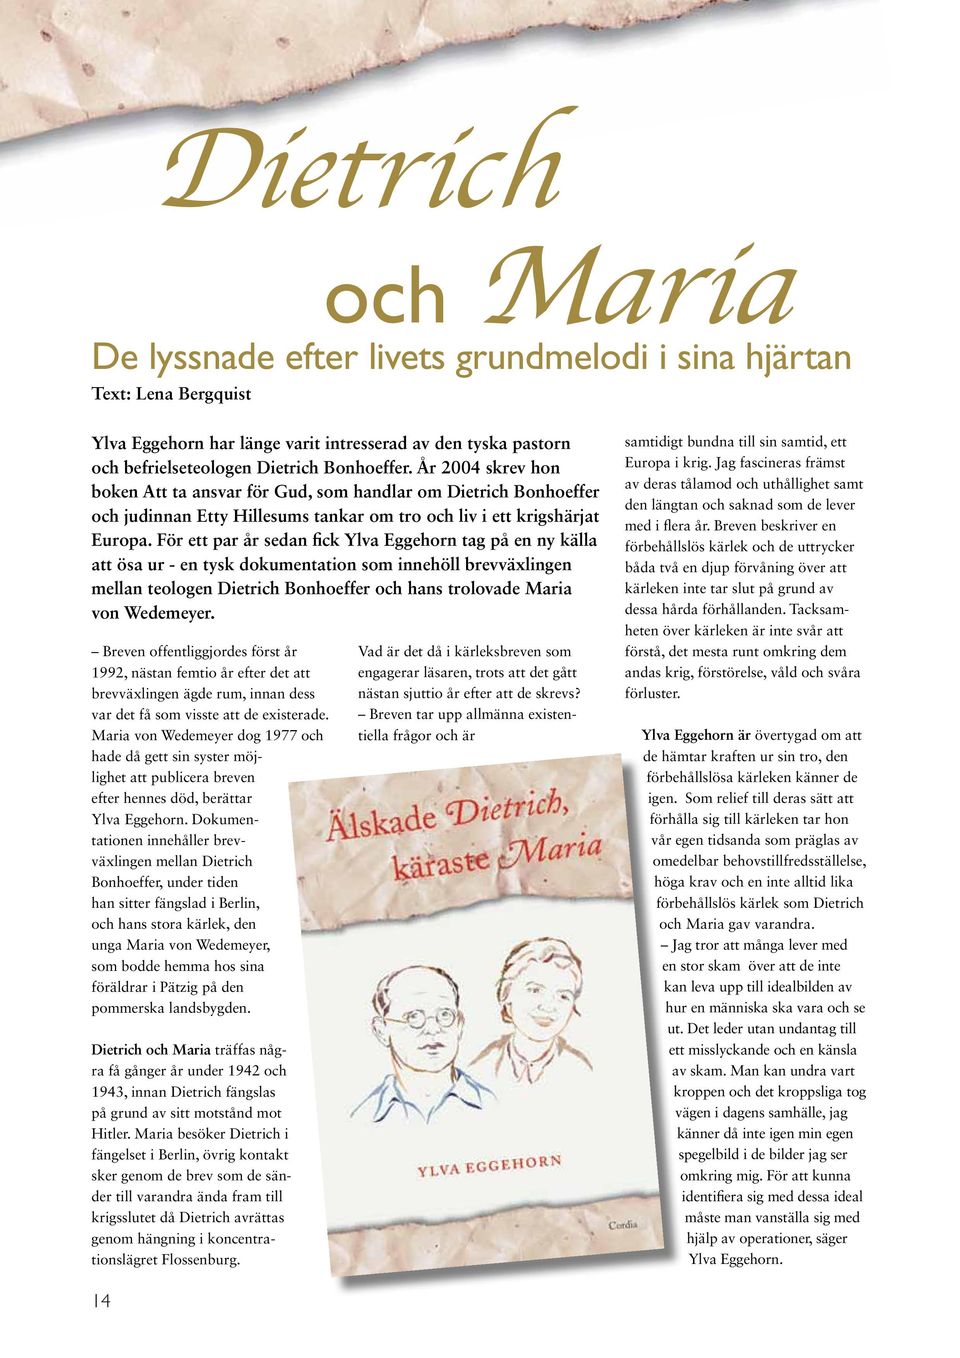 För ett par år sedan fick Ylva Eggehorn tag på en ny källa att ösa ur - en tysk dokumentation som innehöll brevväxlingen mellan teologen Dietrich Bonhoeffer och hans trolovade Maria von Wedemeyer.